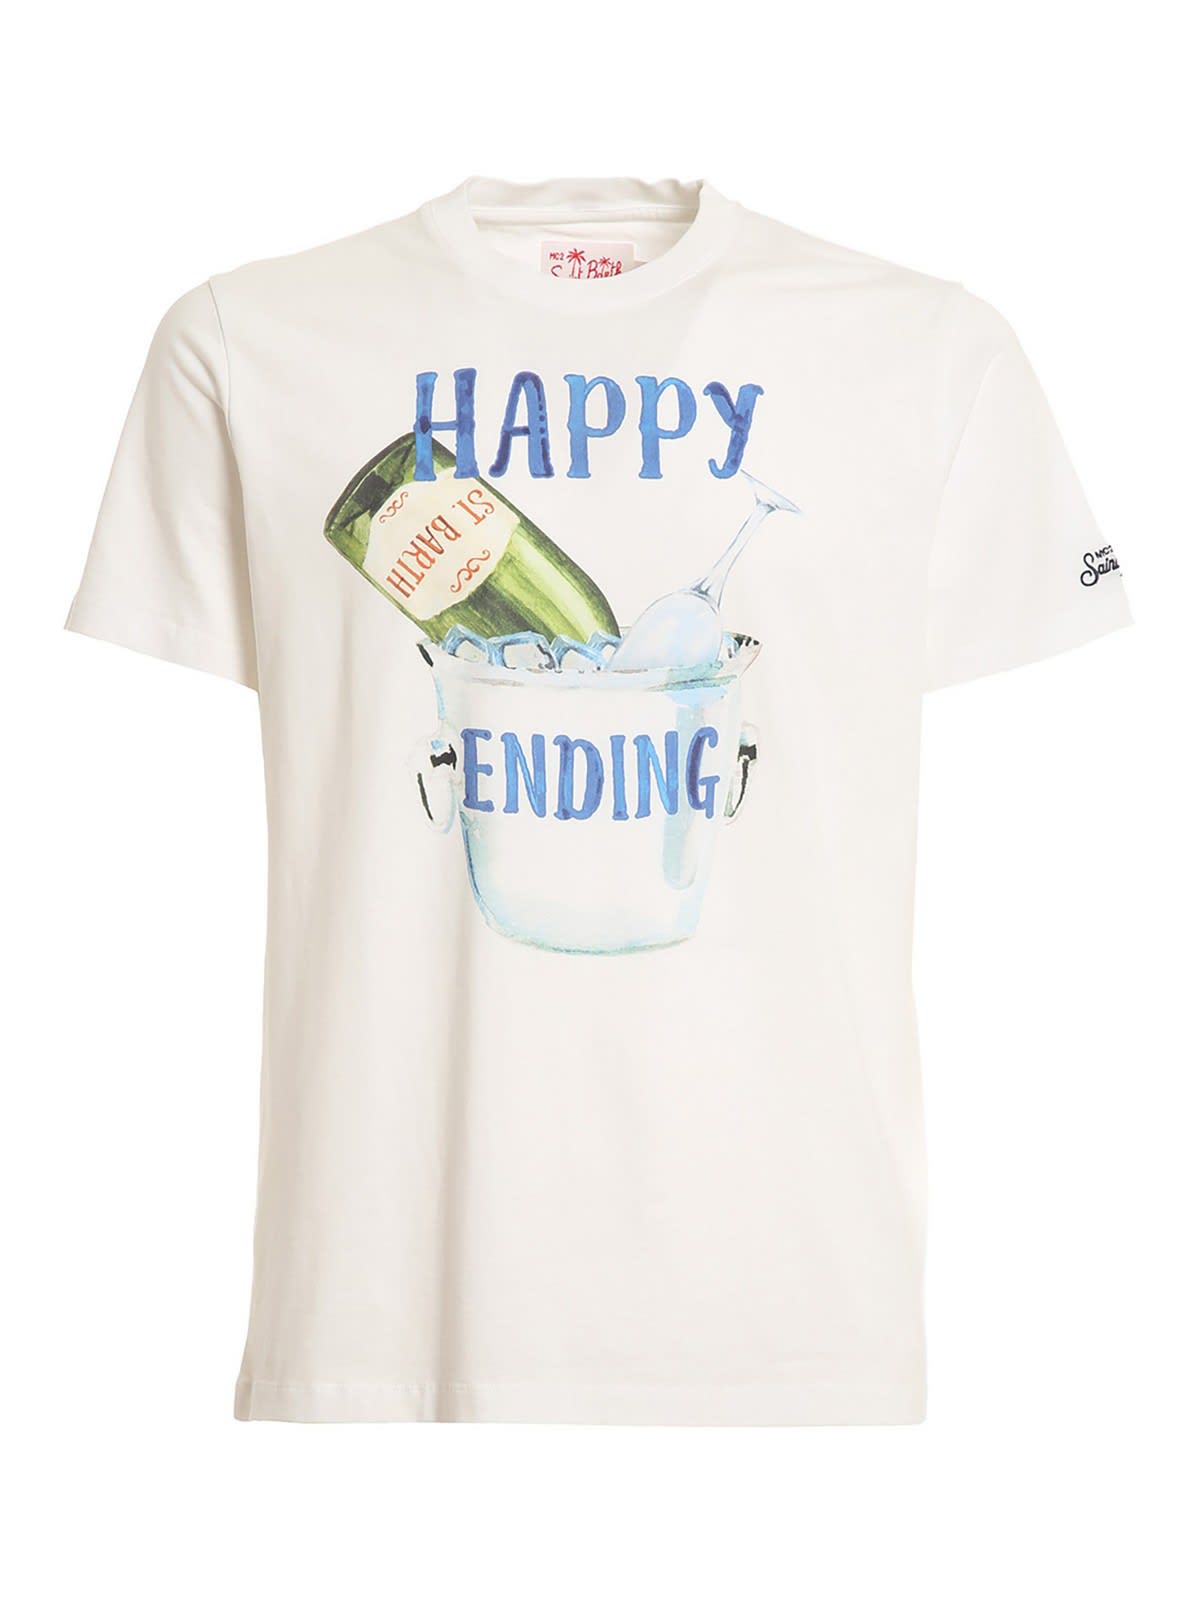 MC2 Saint Barth T-shirt Happy Ending Bianca Tshirtman02821b